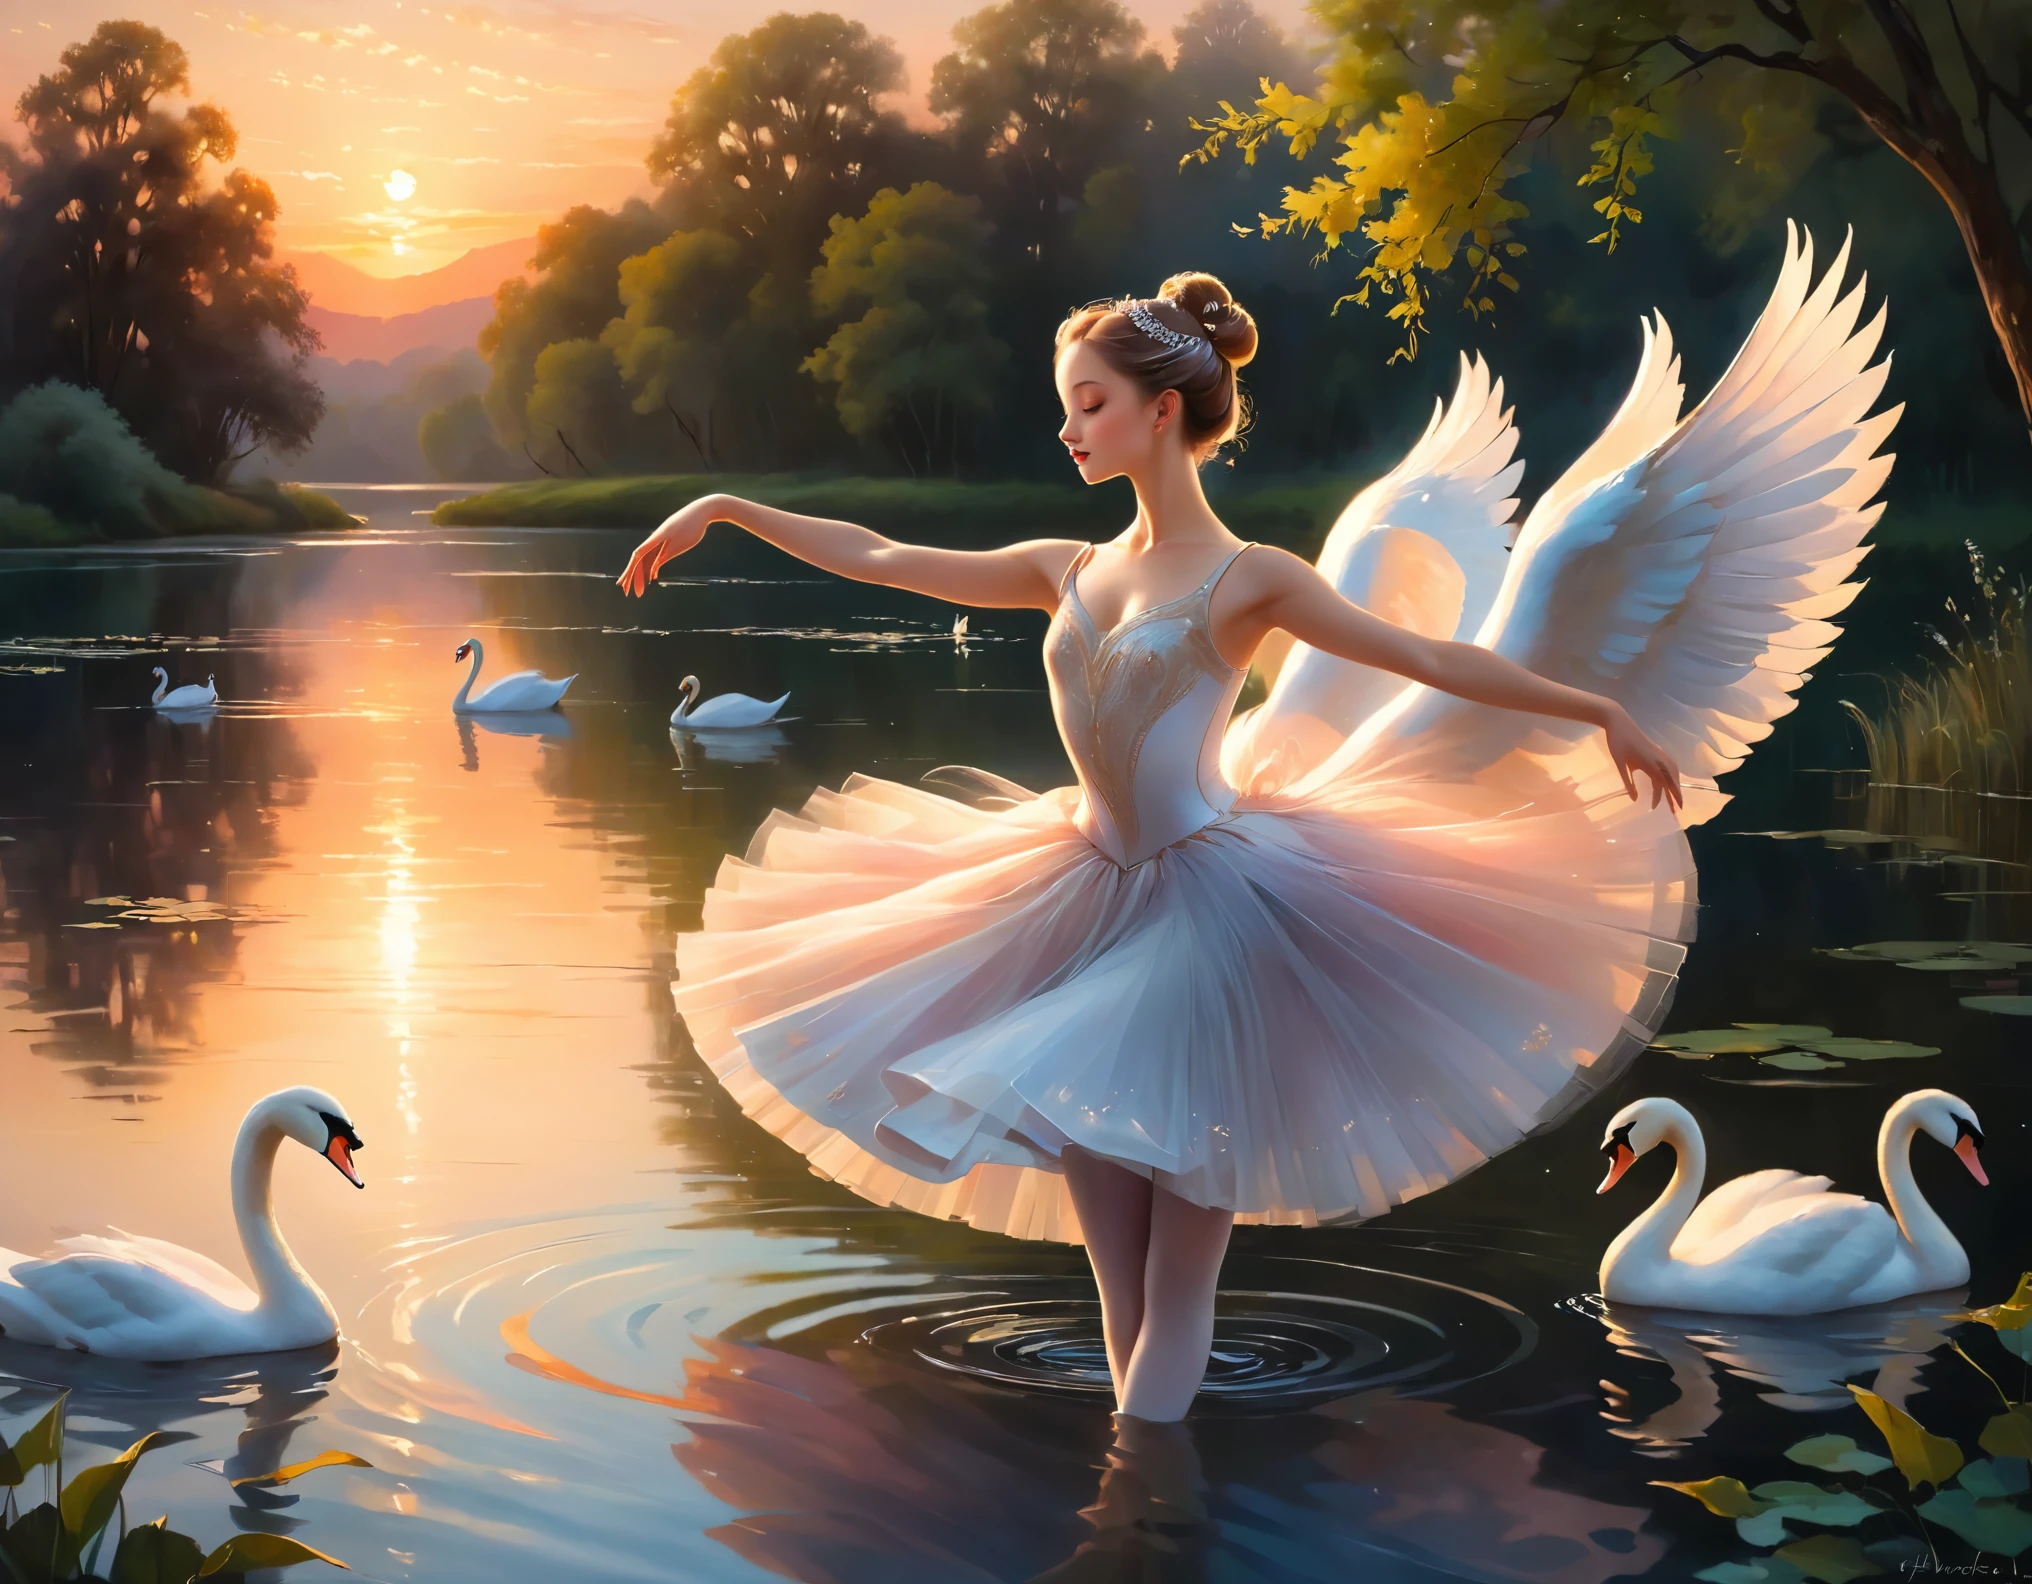 Wunderschöne Ballerina tanzt bei Sonnenuntergang am ruhigen Lake of Swans:
Eine Szene ätherischer Anmut und Gelassenheit entfaltet sich in diesem exquisiten Gemälde. Die weiche, Öltöne der ersten Röte der Abenddämmerung küssen die Wasseroberfläche, wirft einen warmen Glanz auf die elegante Ballerina, während sie sich im sanften Rhythmus ihres Tanzes verliert. Ihre geschmeidige Gestalt, in ein fließendes Tutu gehüllt, spiegelt die gewundenen Kurven des Sees wider, während ihre Arme, anmutig ausgestreckt, strecken sich zum Himmel wie die anmutigen Hälse der Schwäne, die mühelos über das Wasser gleiten. Das Meisterwerk erwacht zum Leben durch aufwendige Details in